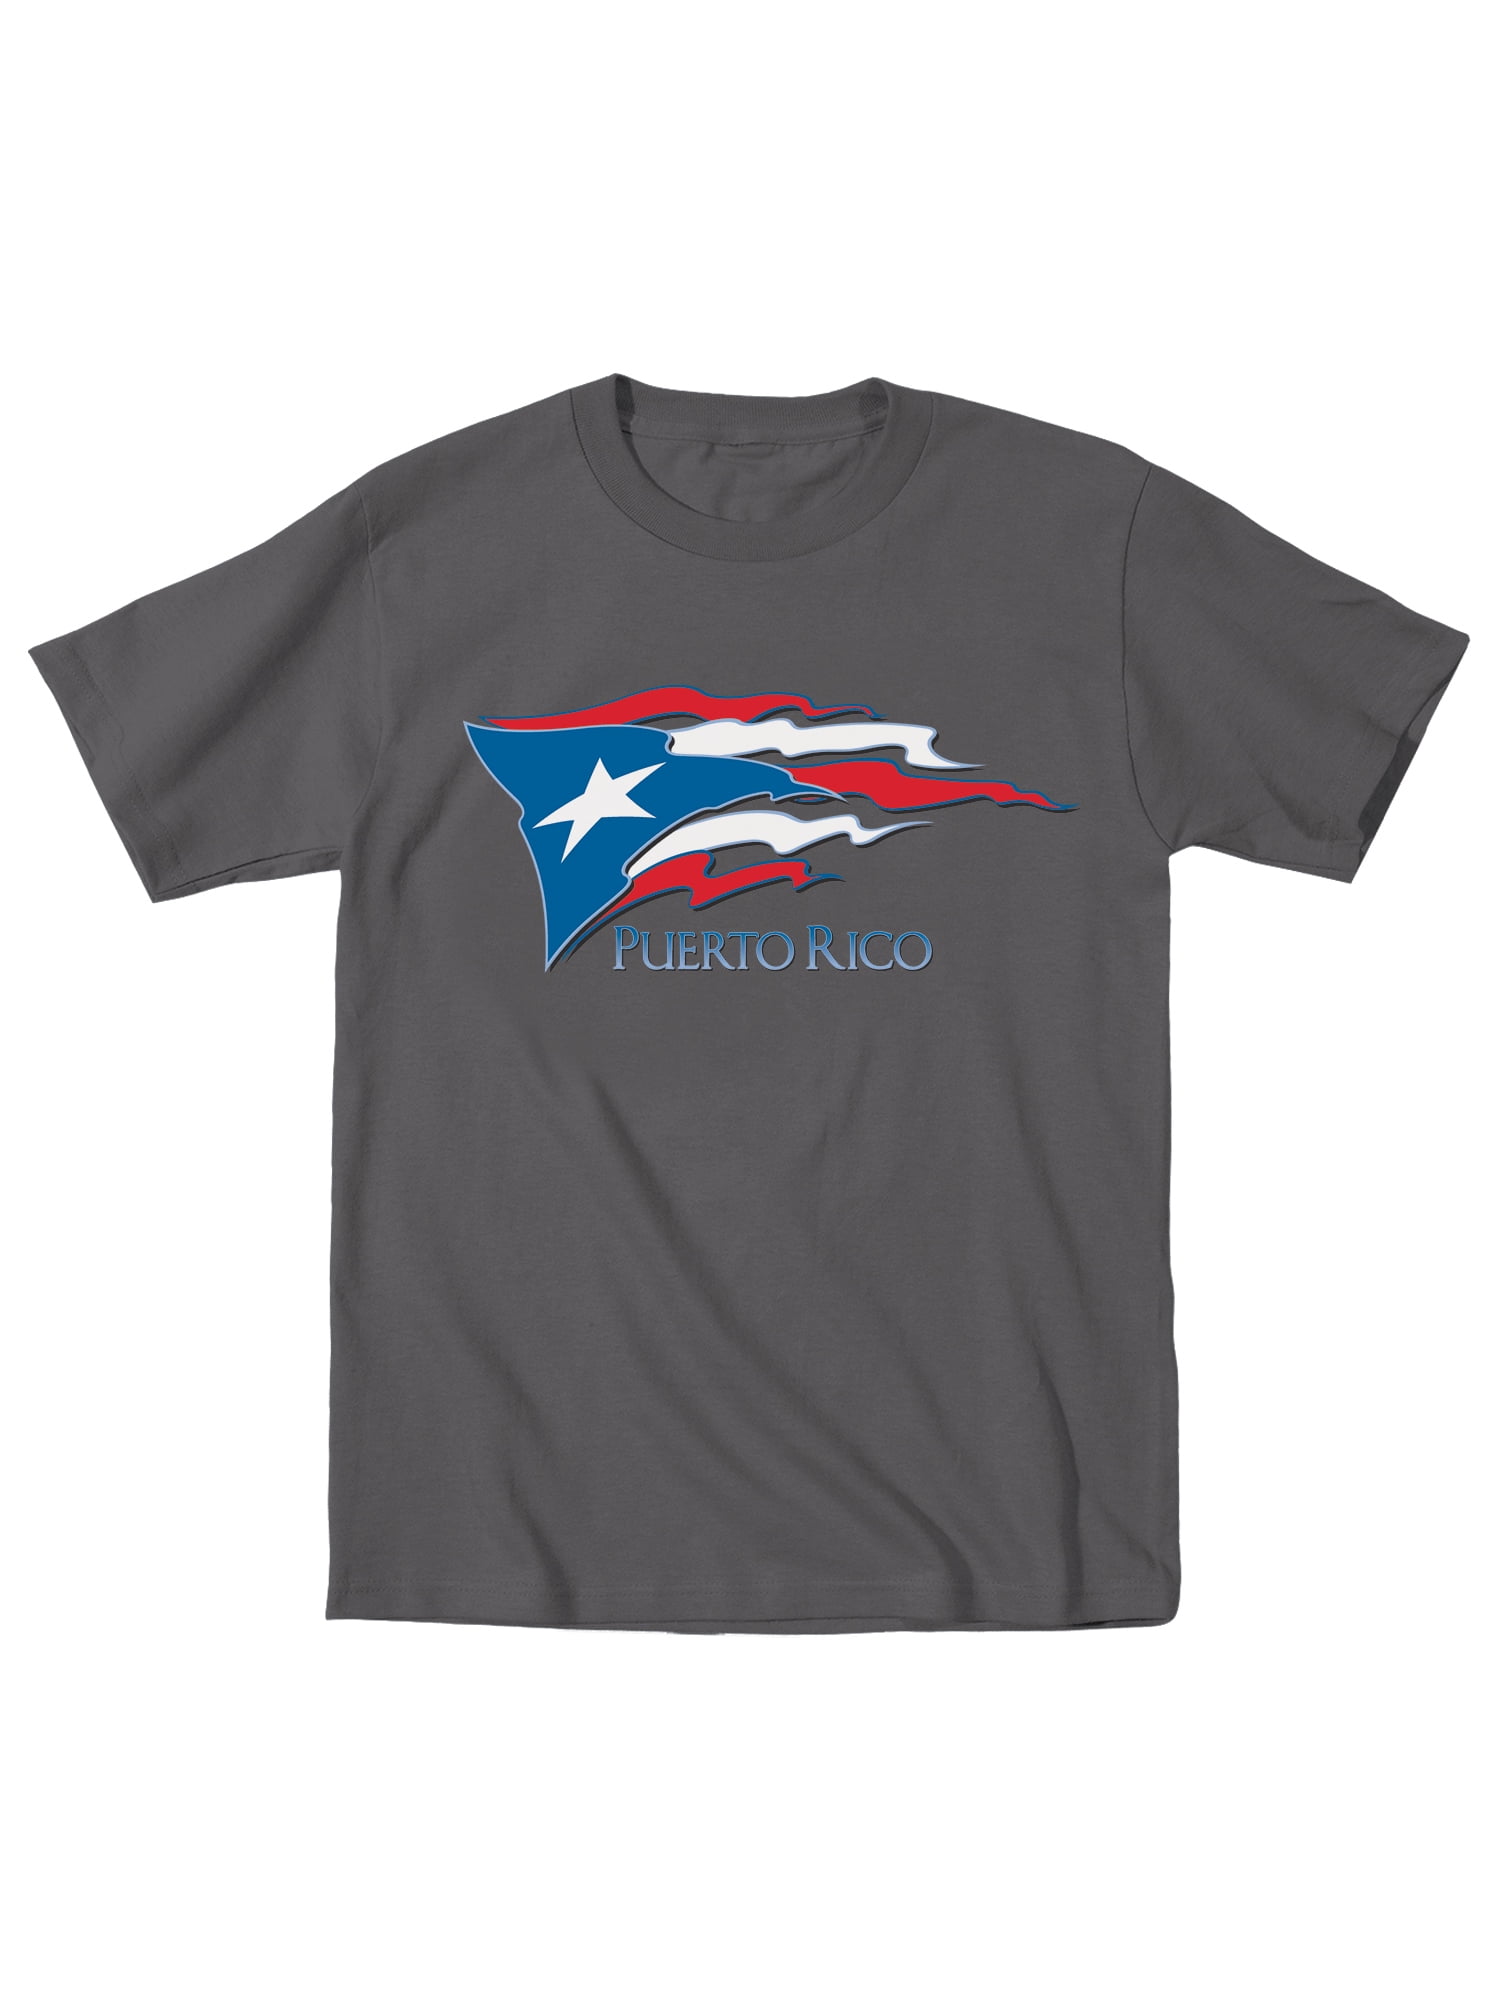 Puerto Rico Pride Printed Mens Short Sleeve Fashion Tee Shirts 